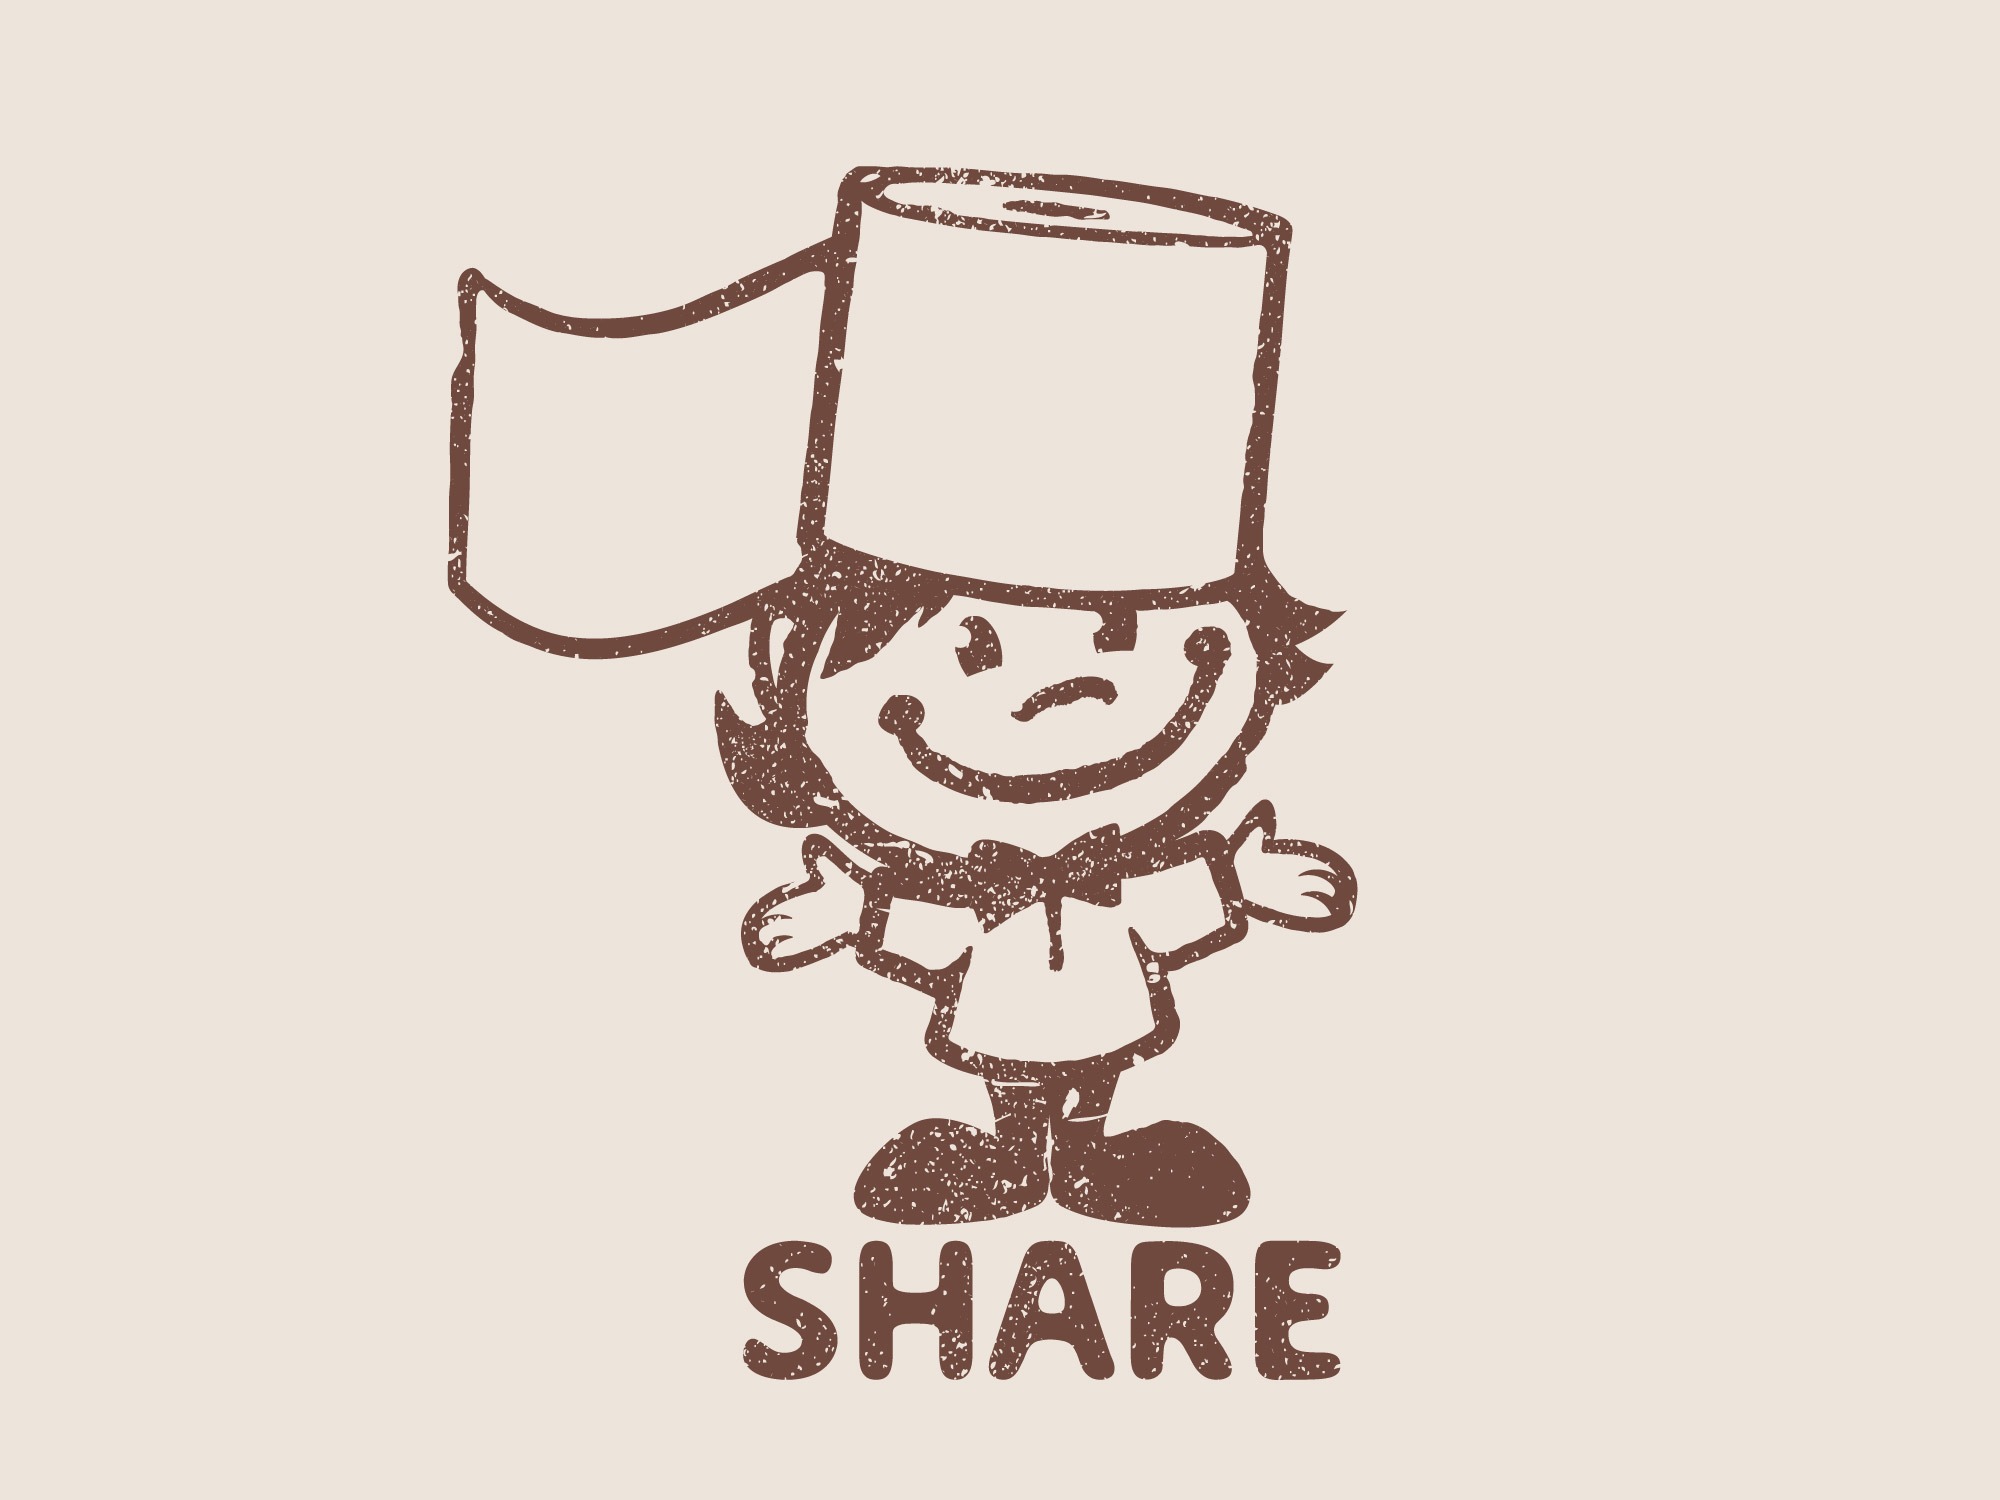 Share Toilet Paper mascot